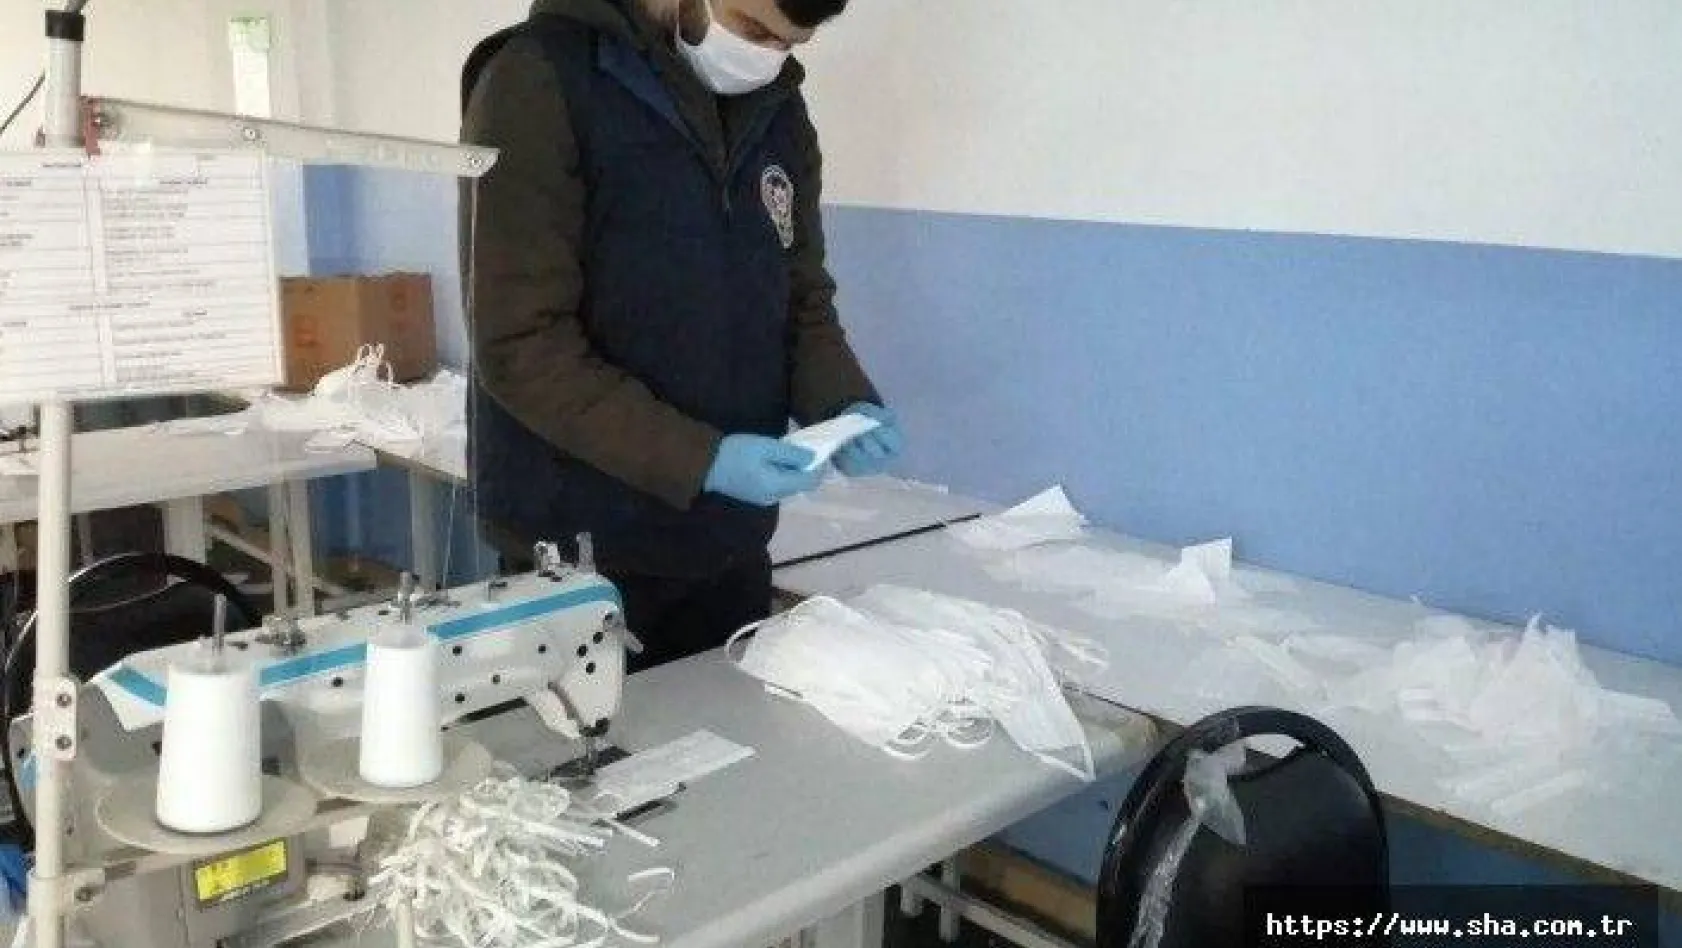 Korona virüs fırsatçılarına baskın: 1 milyon sahte maske ele geçirildi